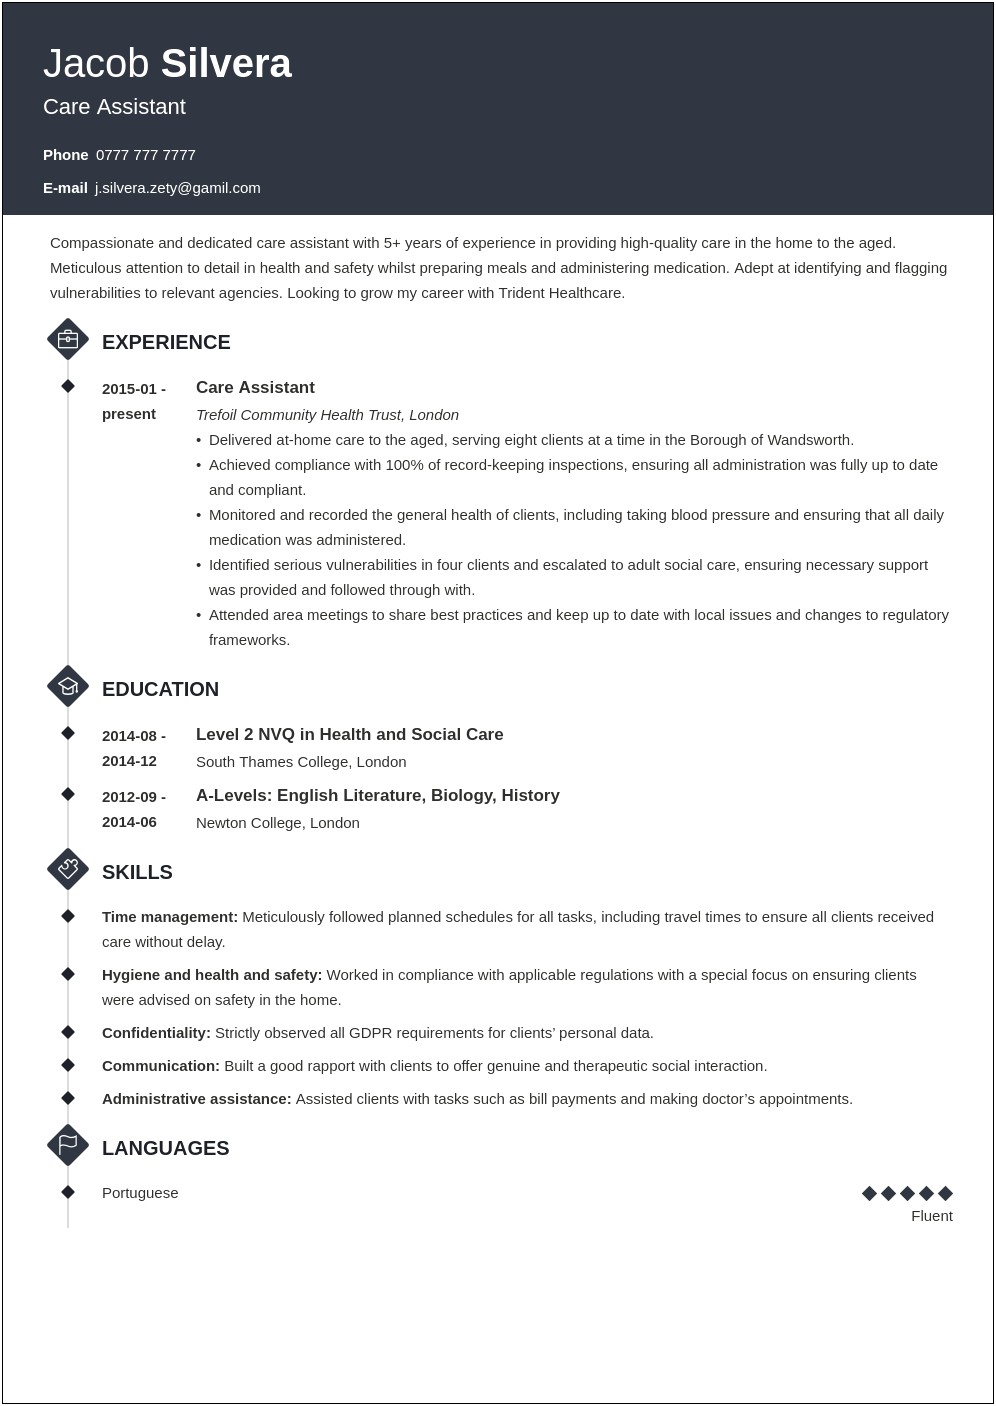 Care Assistant Job Description For Resume